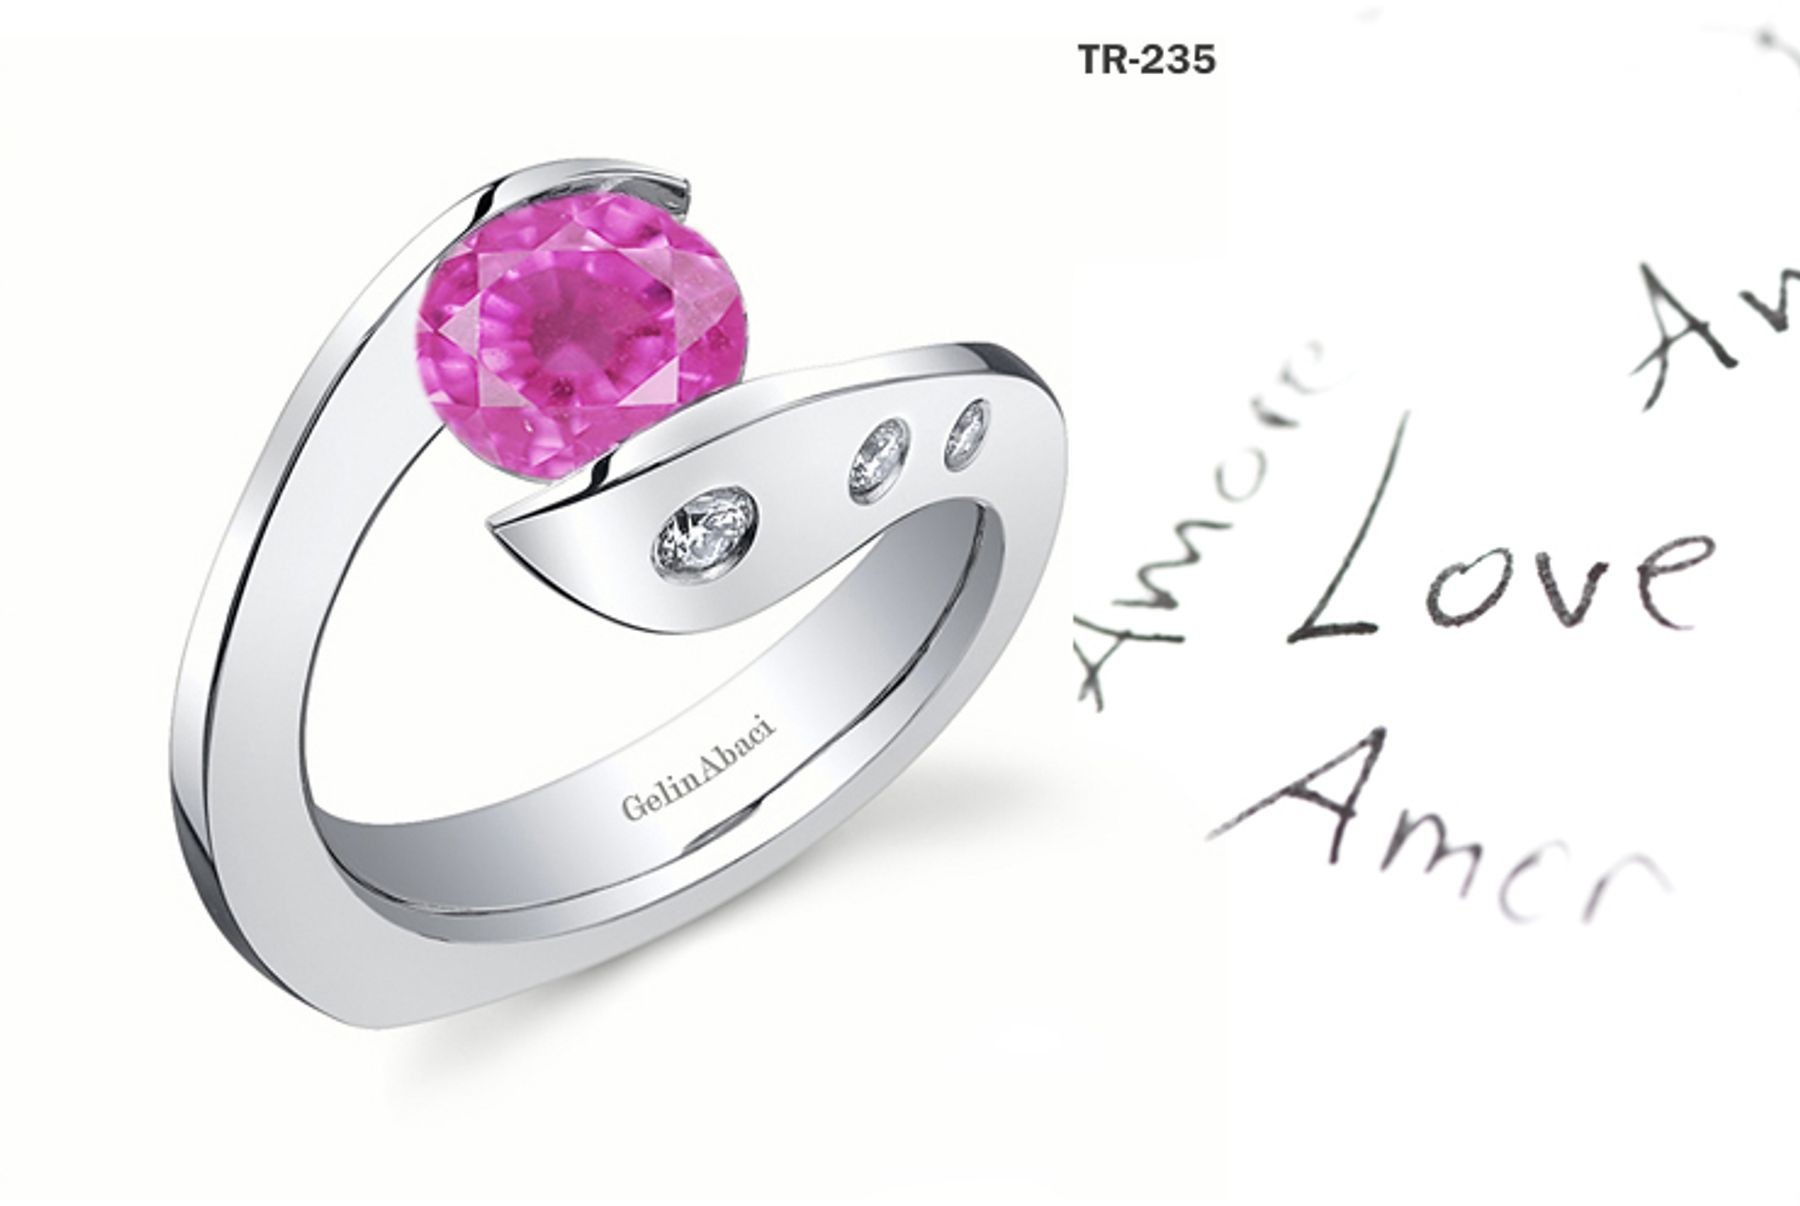 Premier Diamond Jewelry: Tension Set PInk Sapphire Diamond Rings